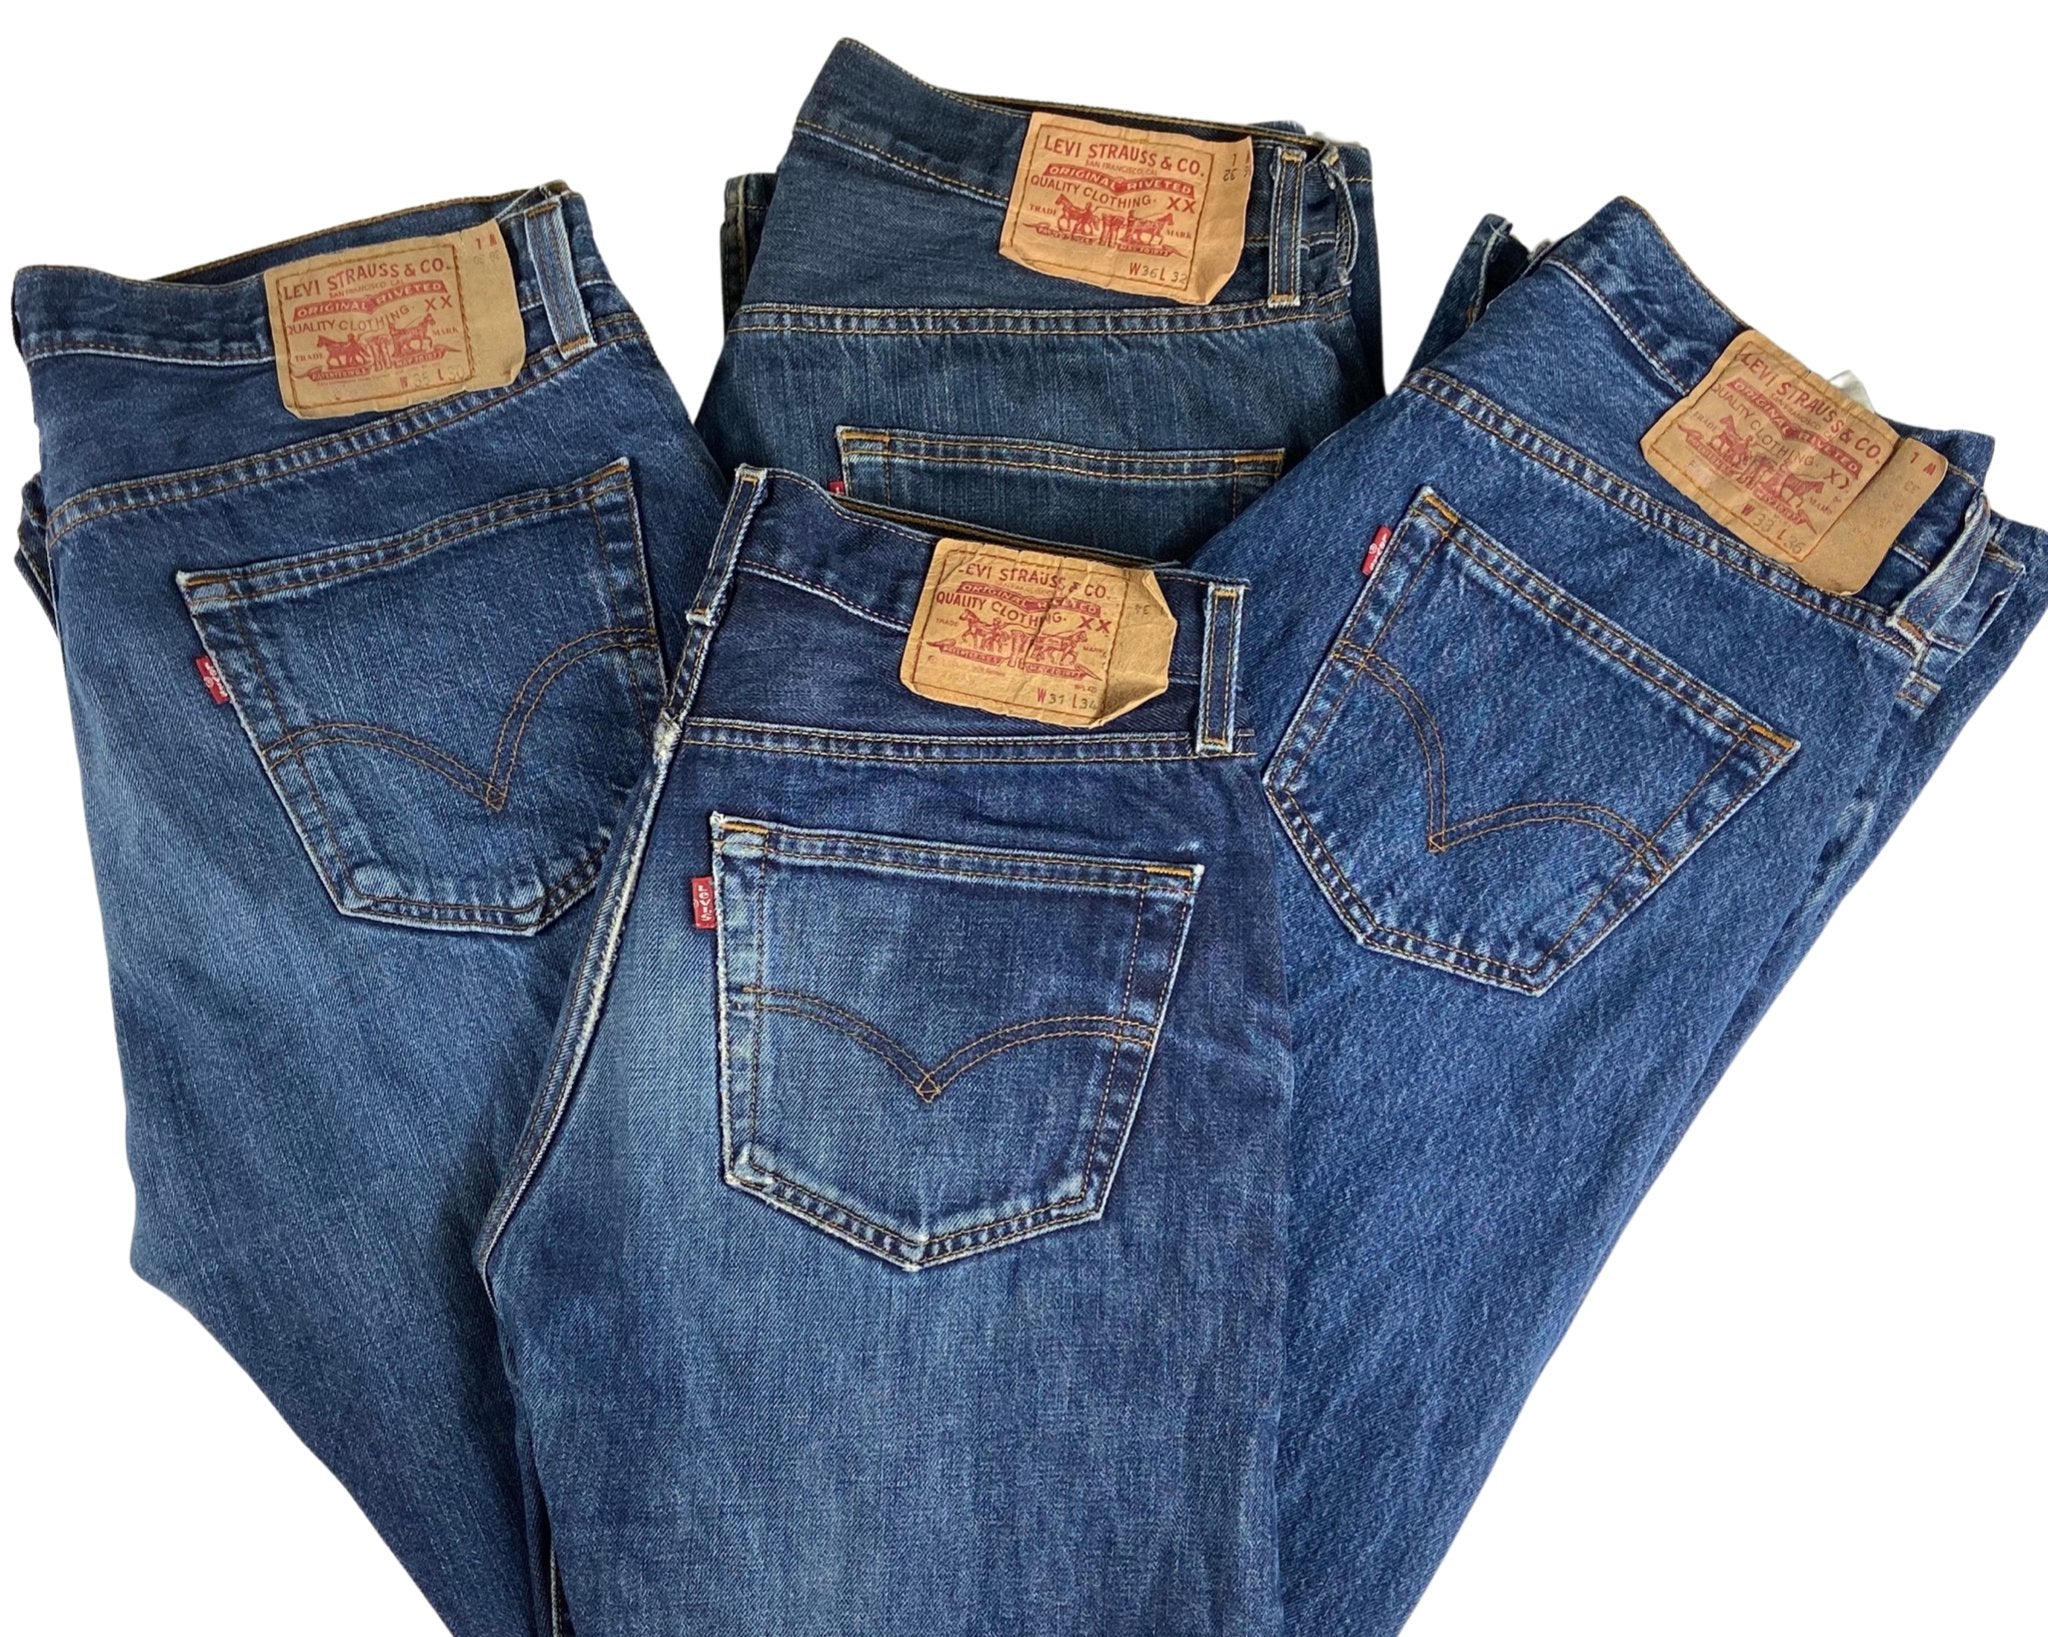 Vintage Levi's Classic Blue Jeans - Waist 34 - Length 30 - Vintage Superstore Online